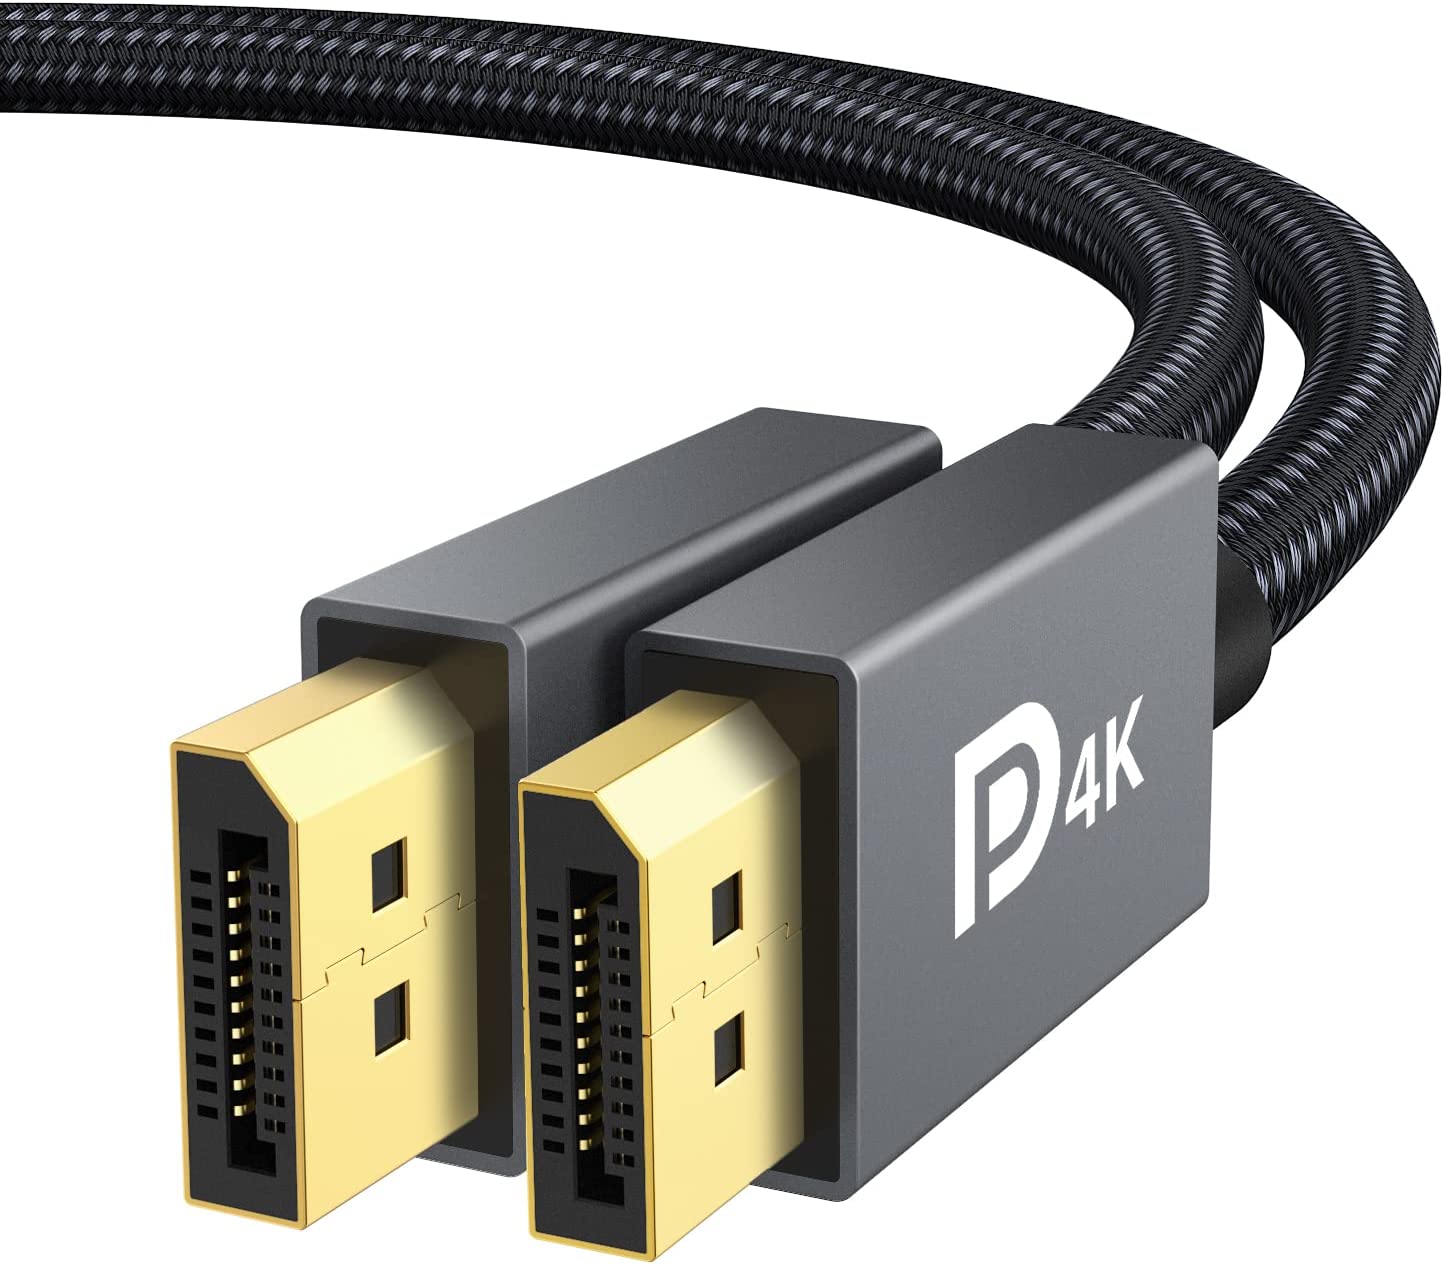 IVANKY VESA Certified DisplayPort Cable, 6.6ft DP [...]